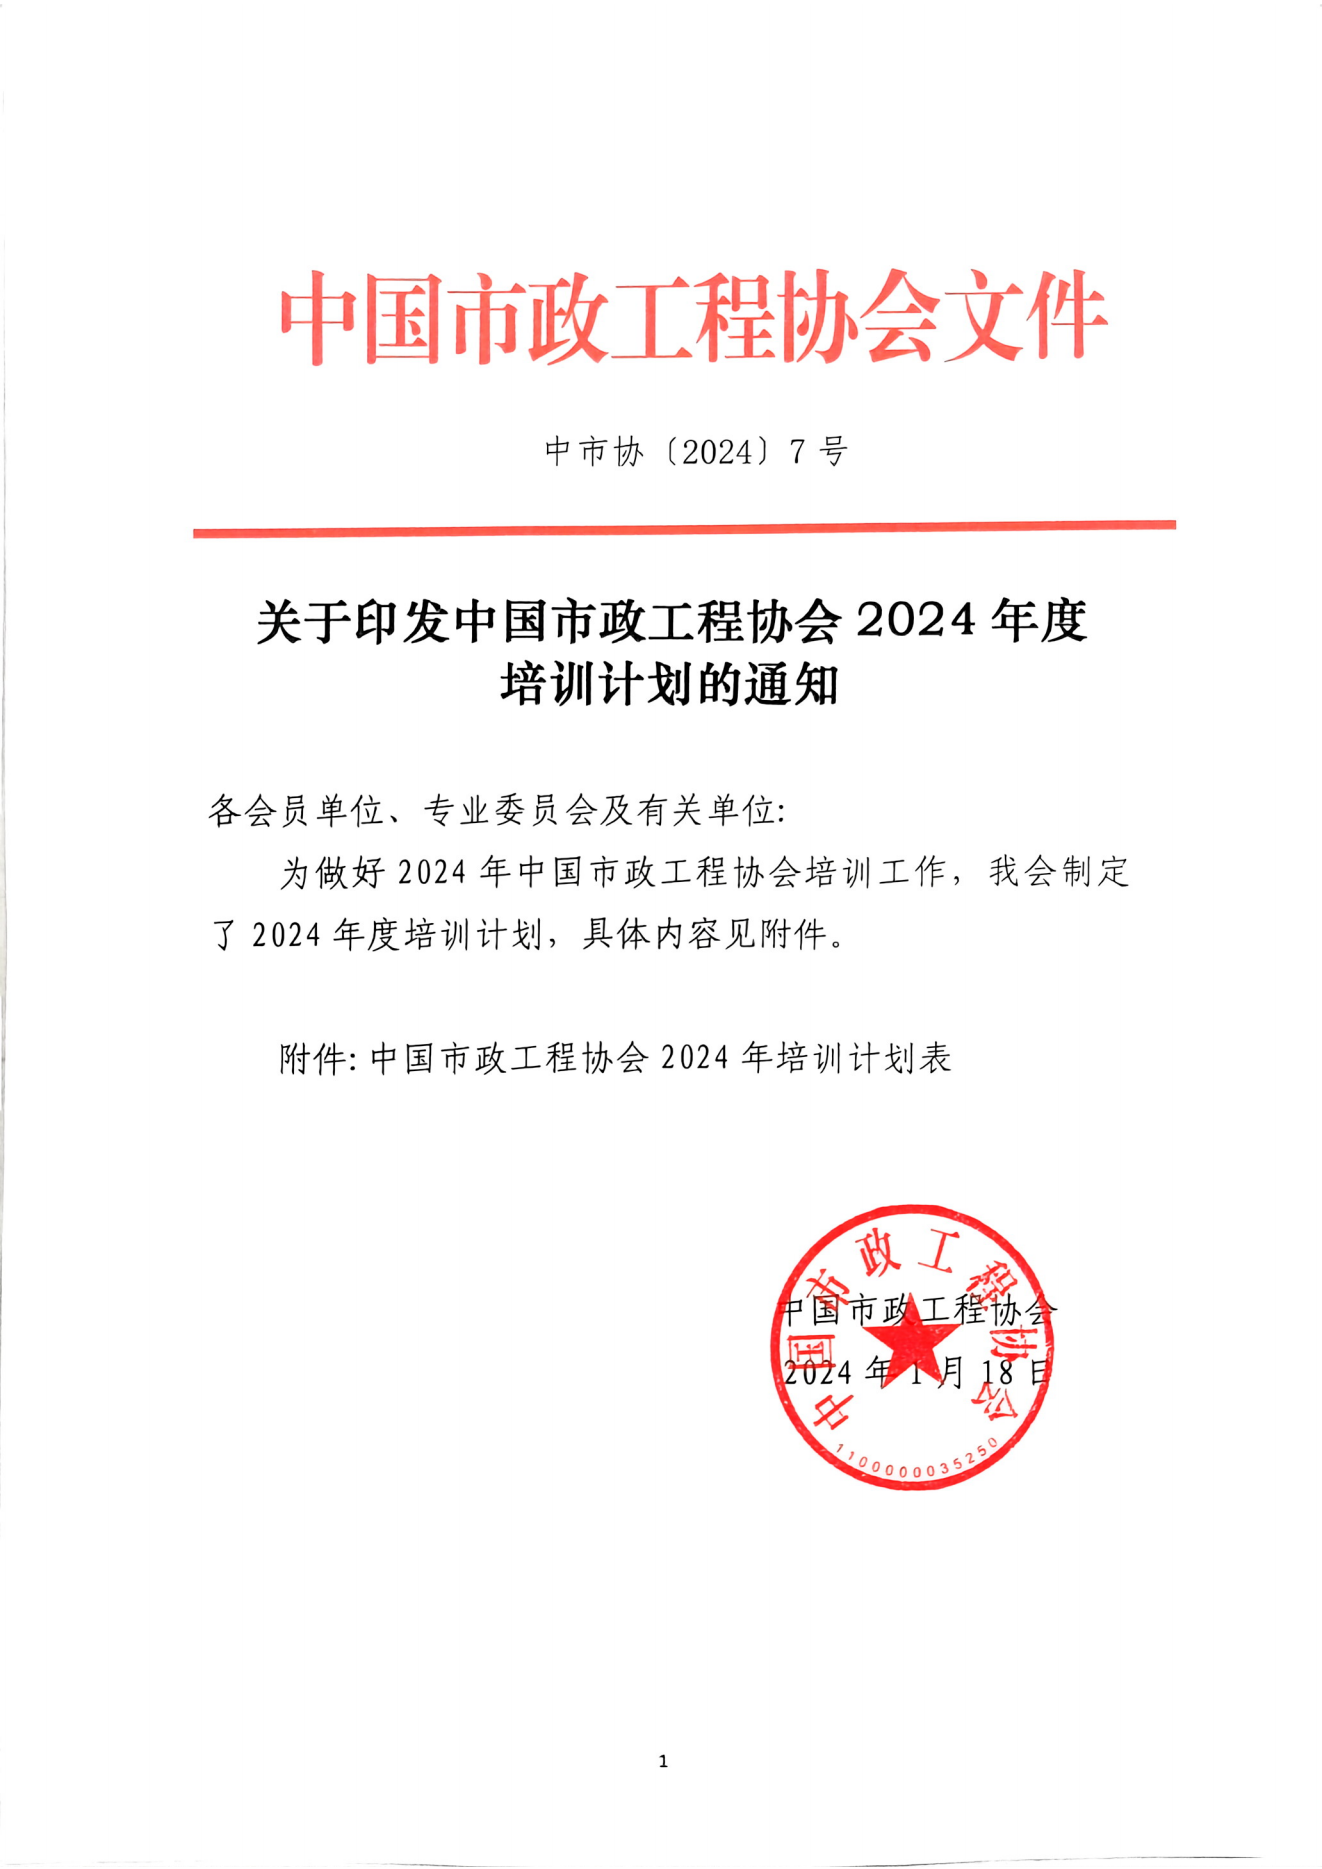 关于印发中国市政工程协会2024年度培训计划的通知